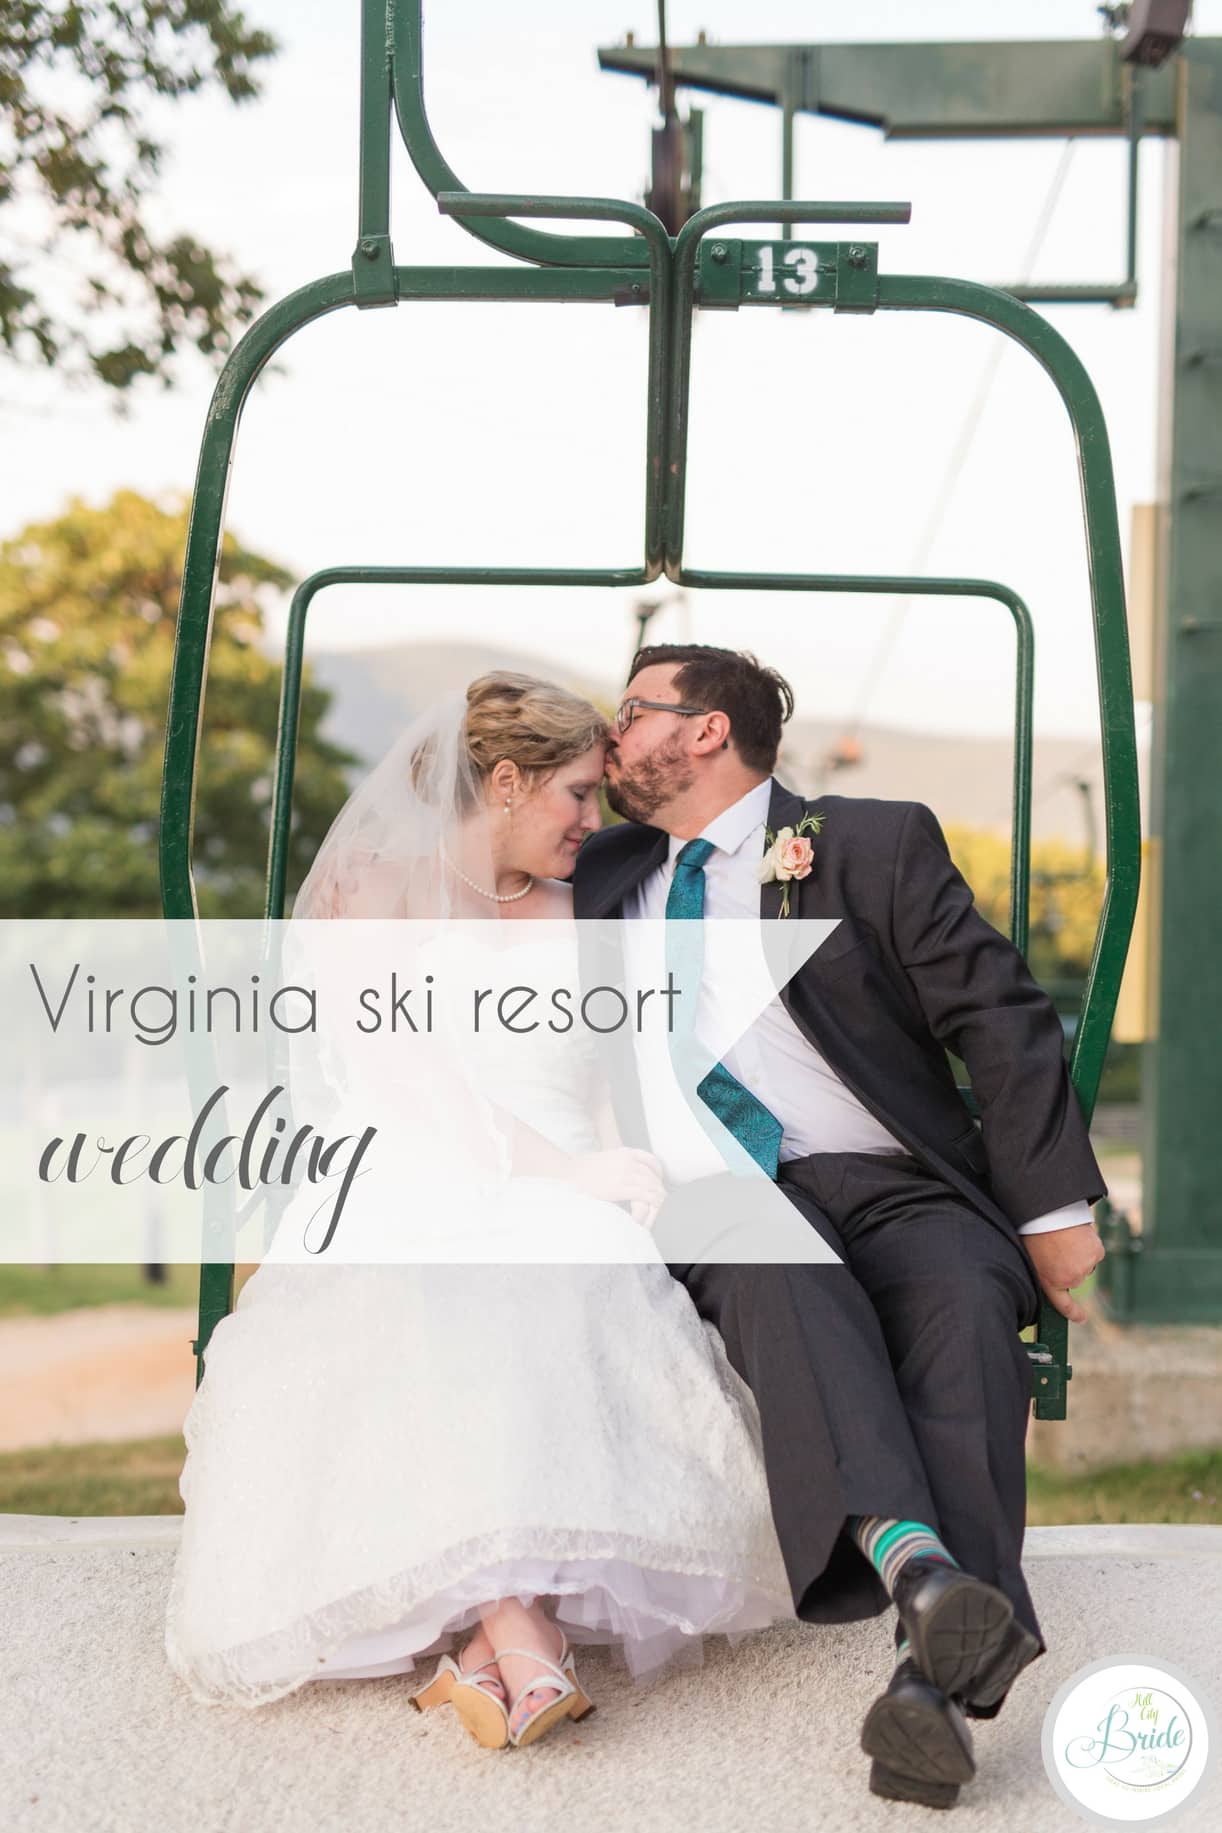 Virginia Ski Resort Wedding at Wintergreen as seen on Hill City Bride Wedding Blog by Ashley Eiban